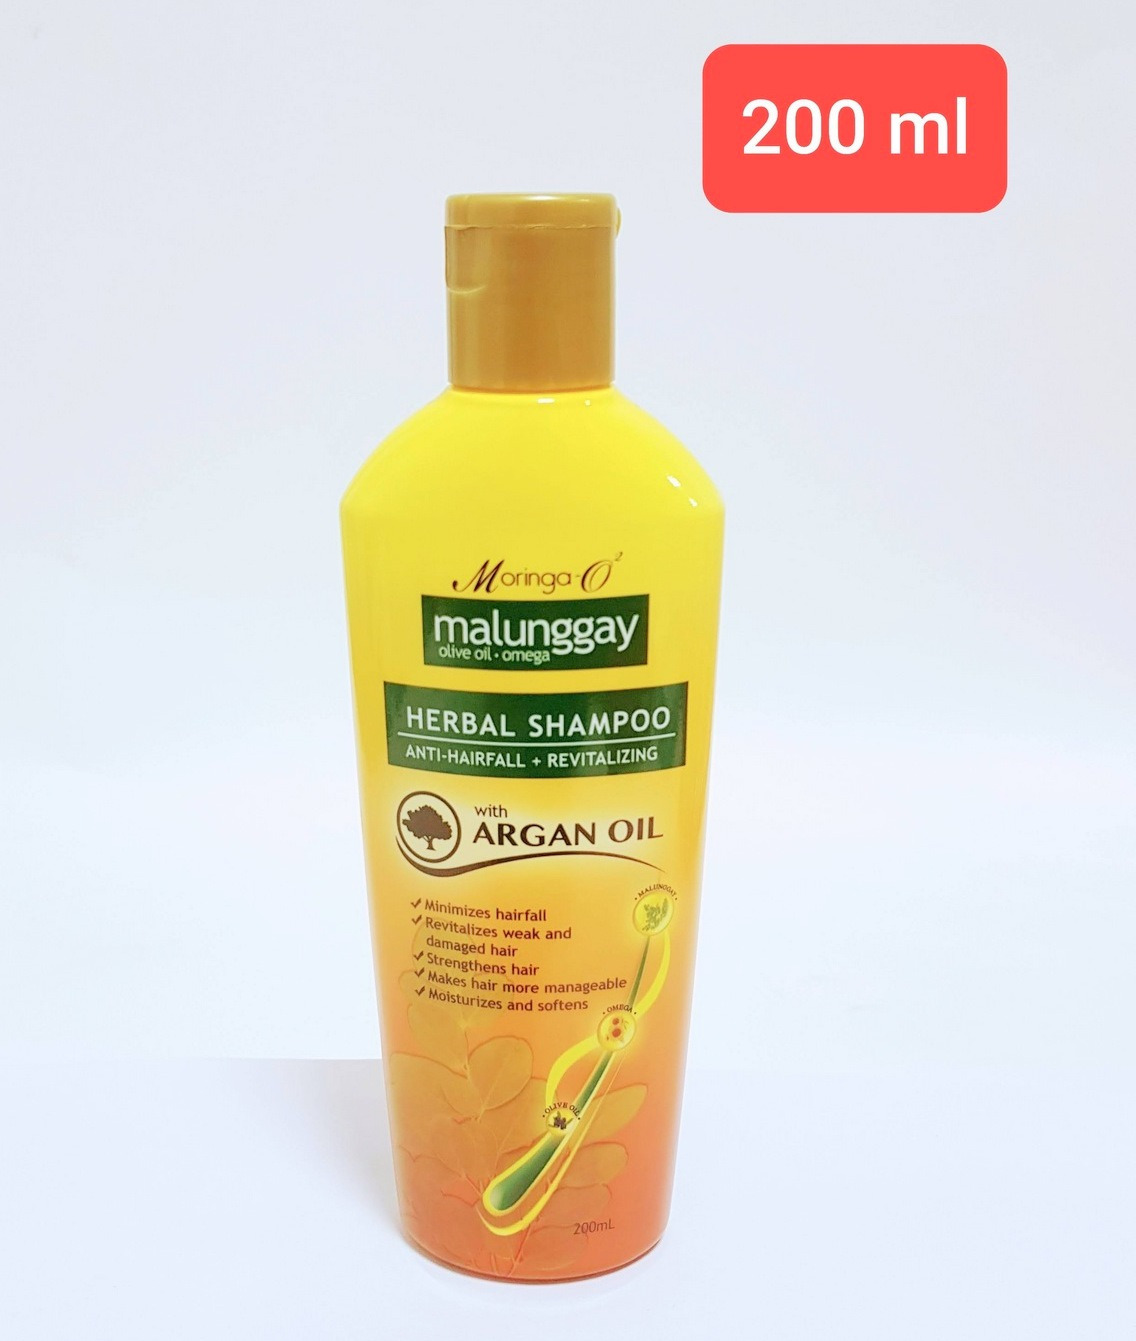 Moringa-O2 Malunggay Herbal Shampoo with Argan Oil (200ml) (Cargo)